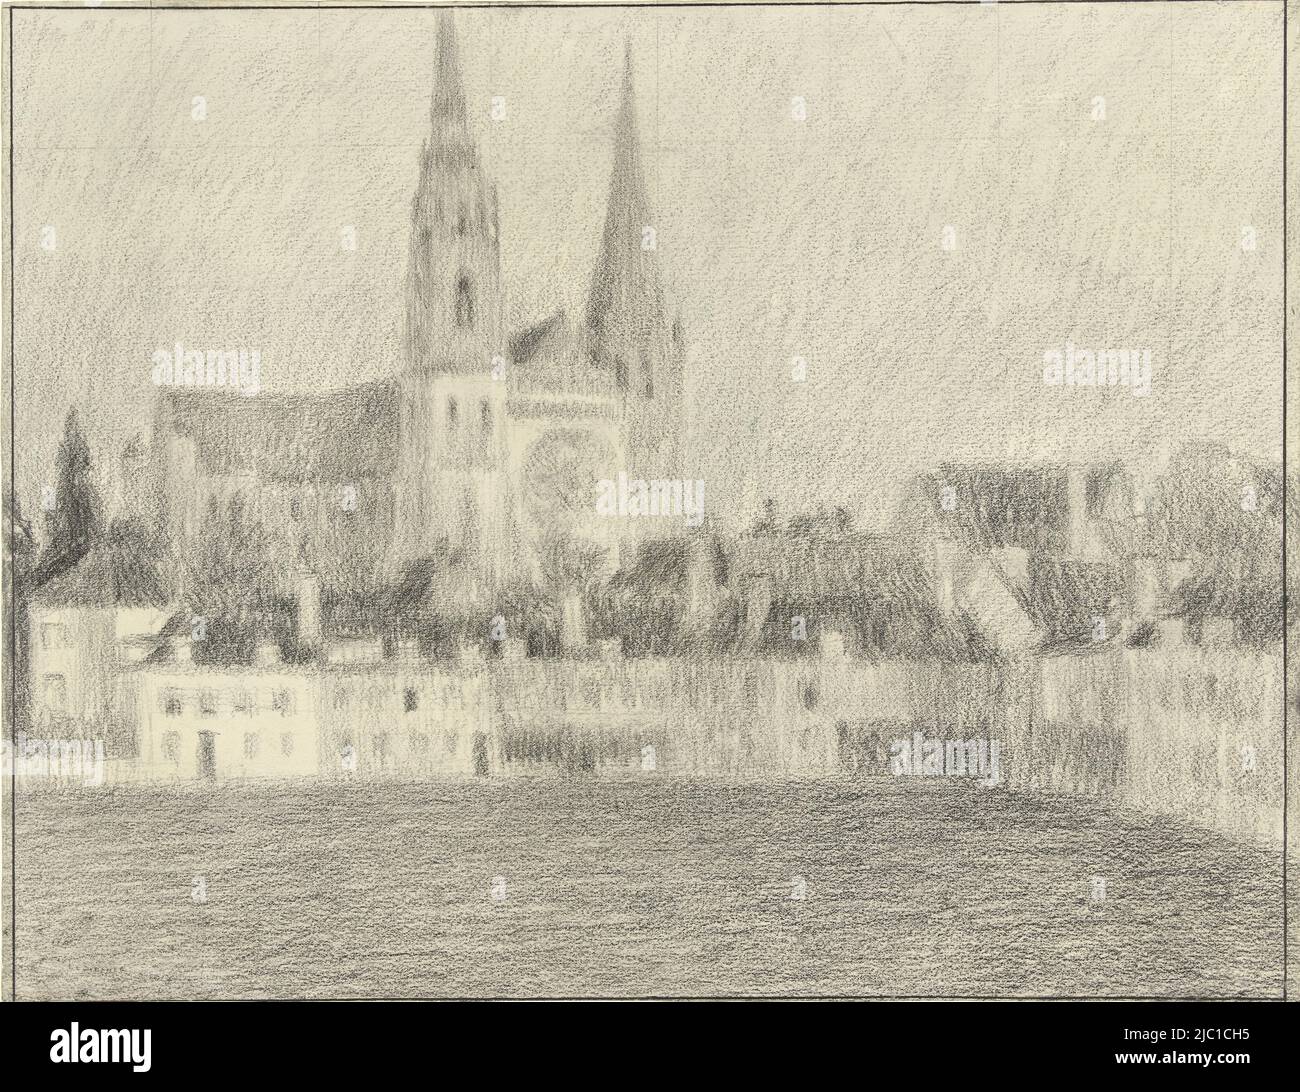 Faccia su Chartres, disegnatore: Henri Eugène le Sidaner, c. 1872 - c. 1939, carta, spazzola, h 307 mm x l 398 mm Foto Stock